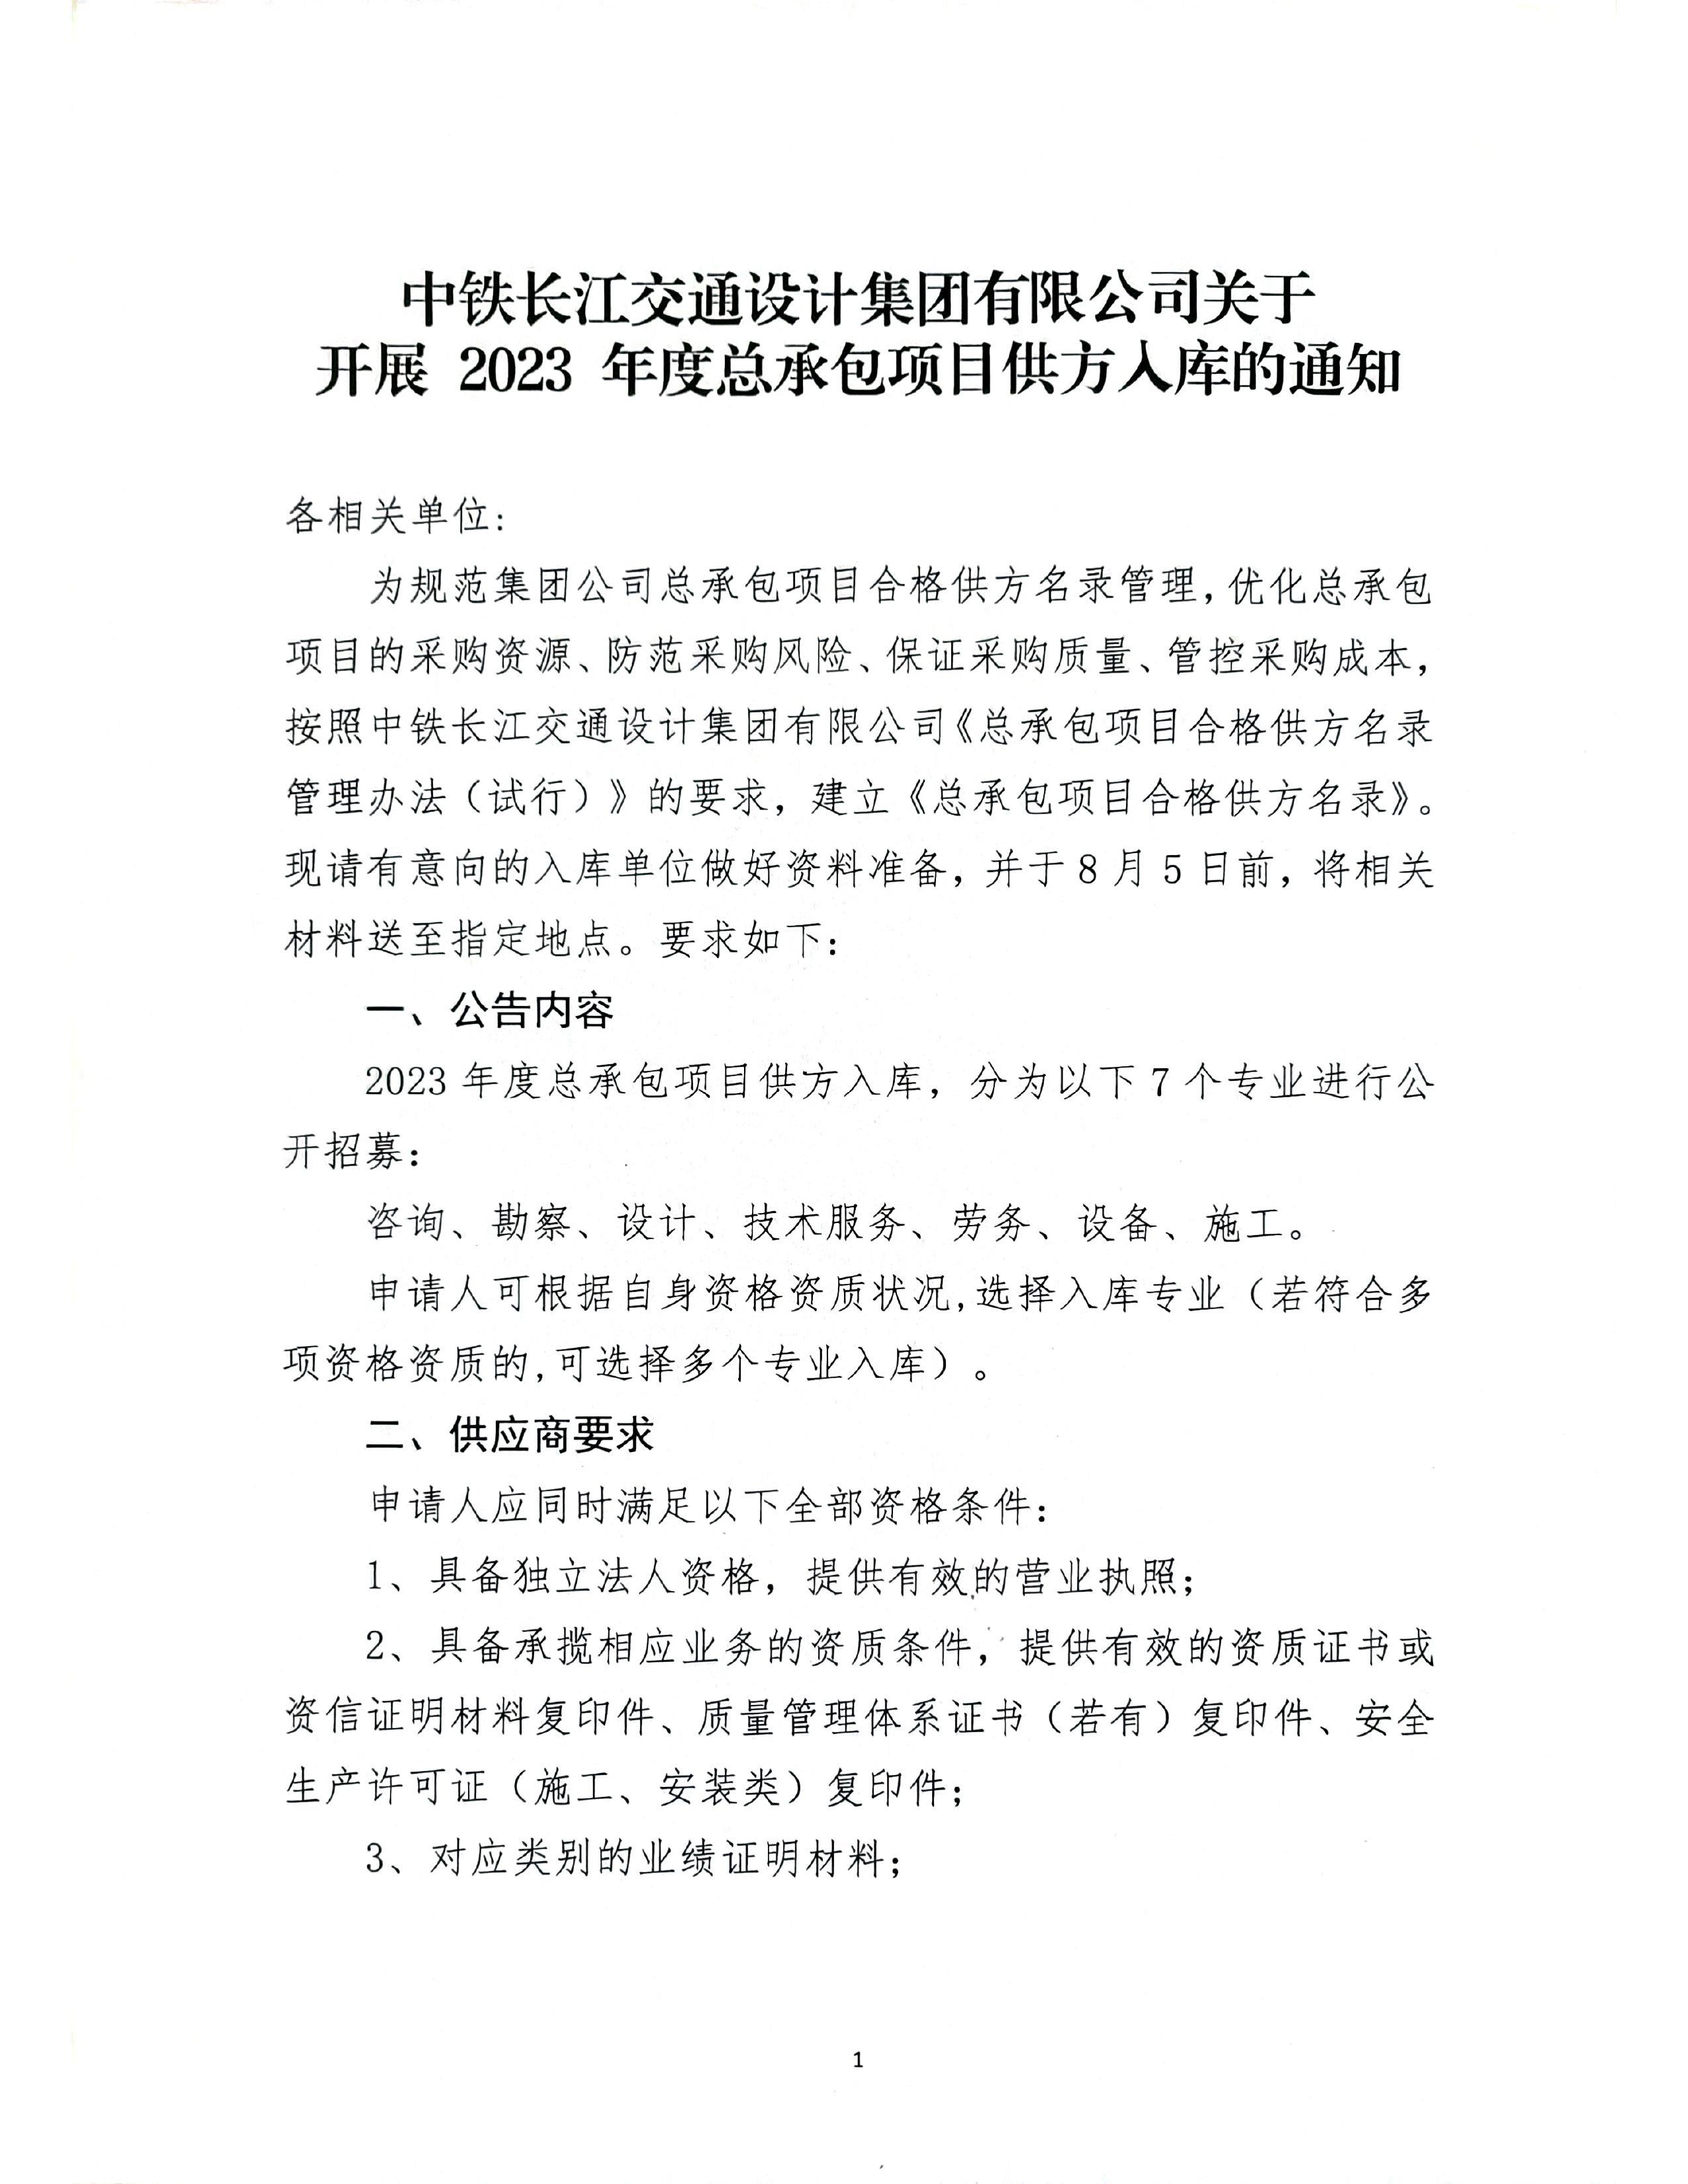 中铁长江交通设计集团有限公司关于开展2023年度总承包项目供方入库的通知_page-0001